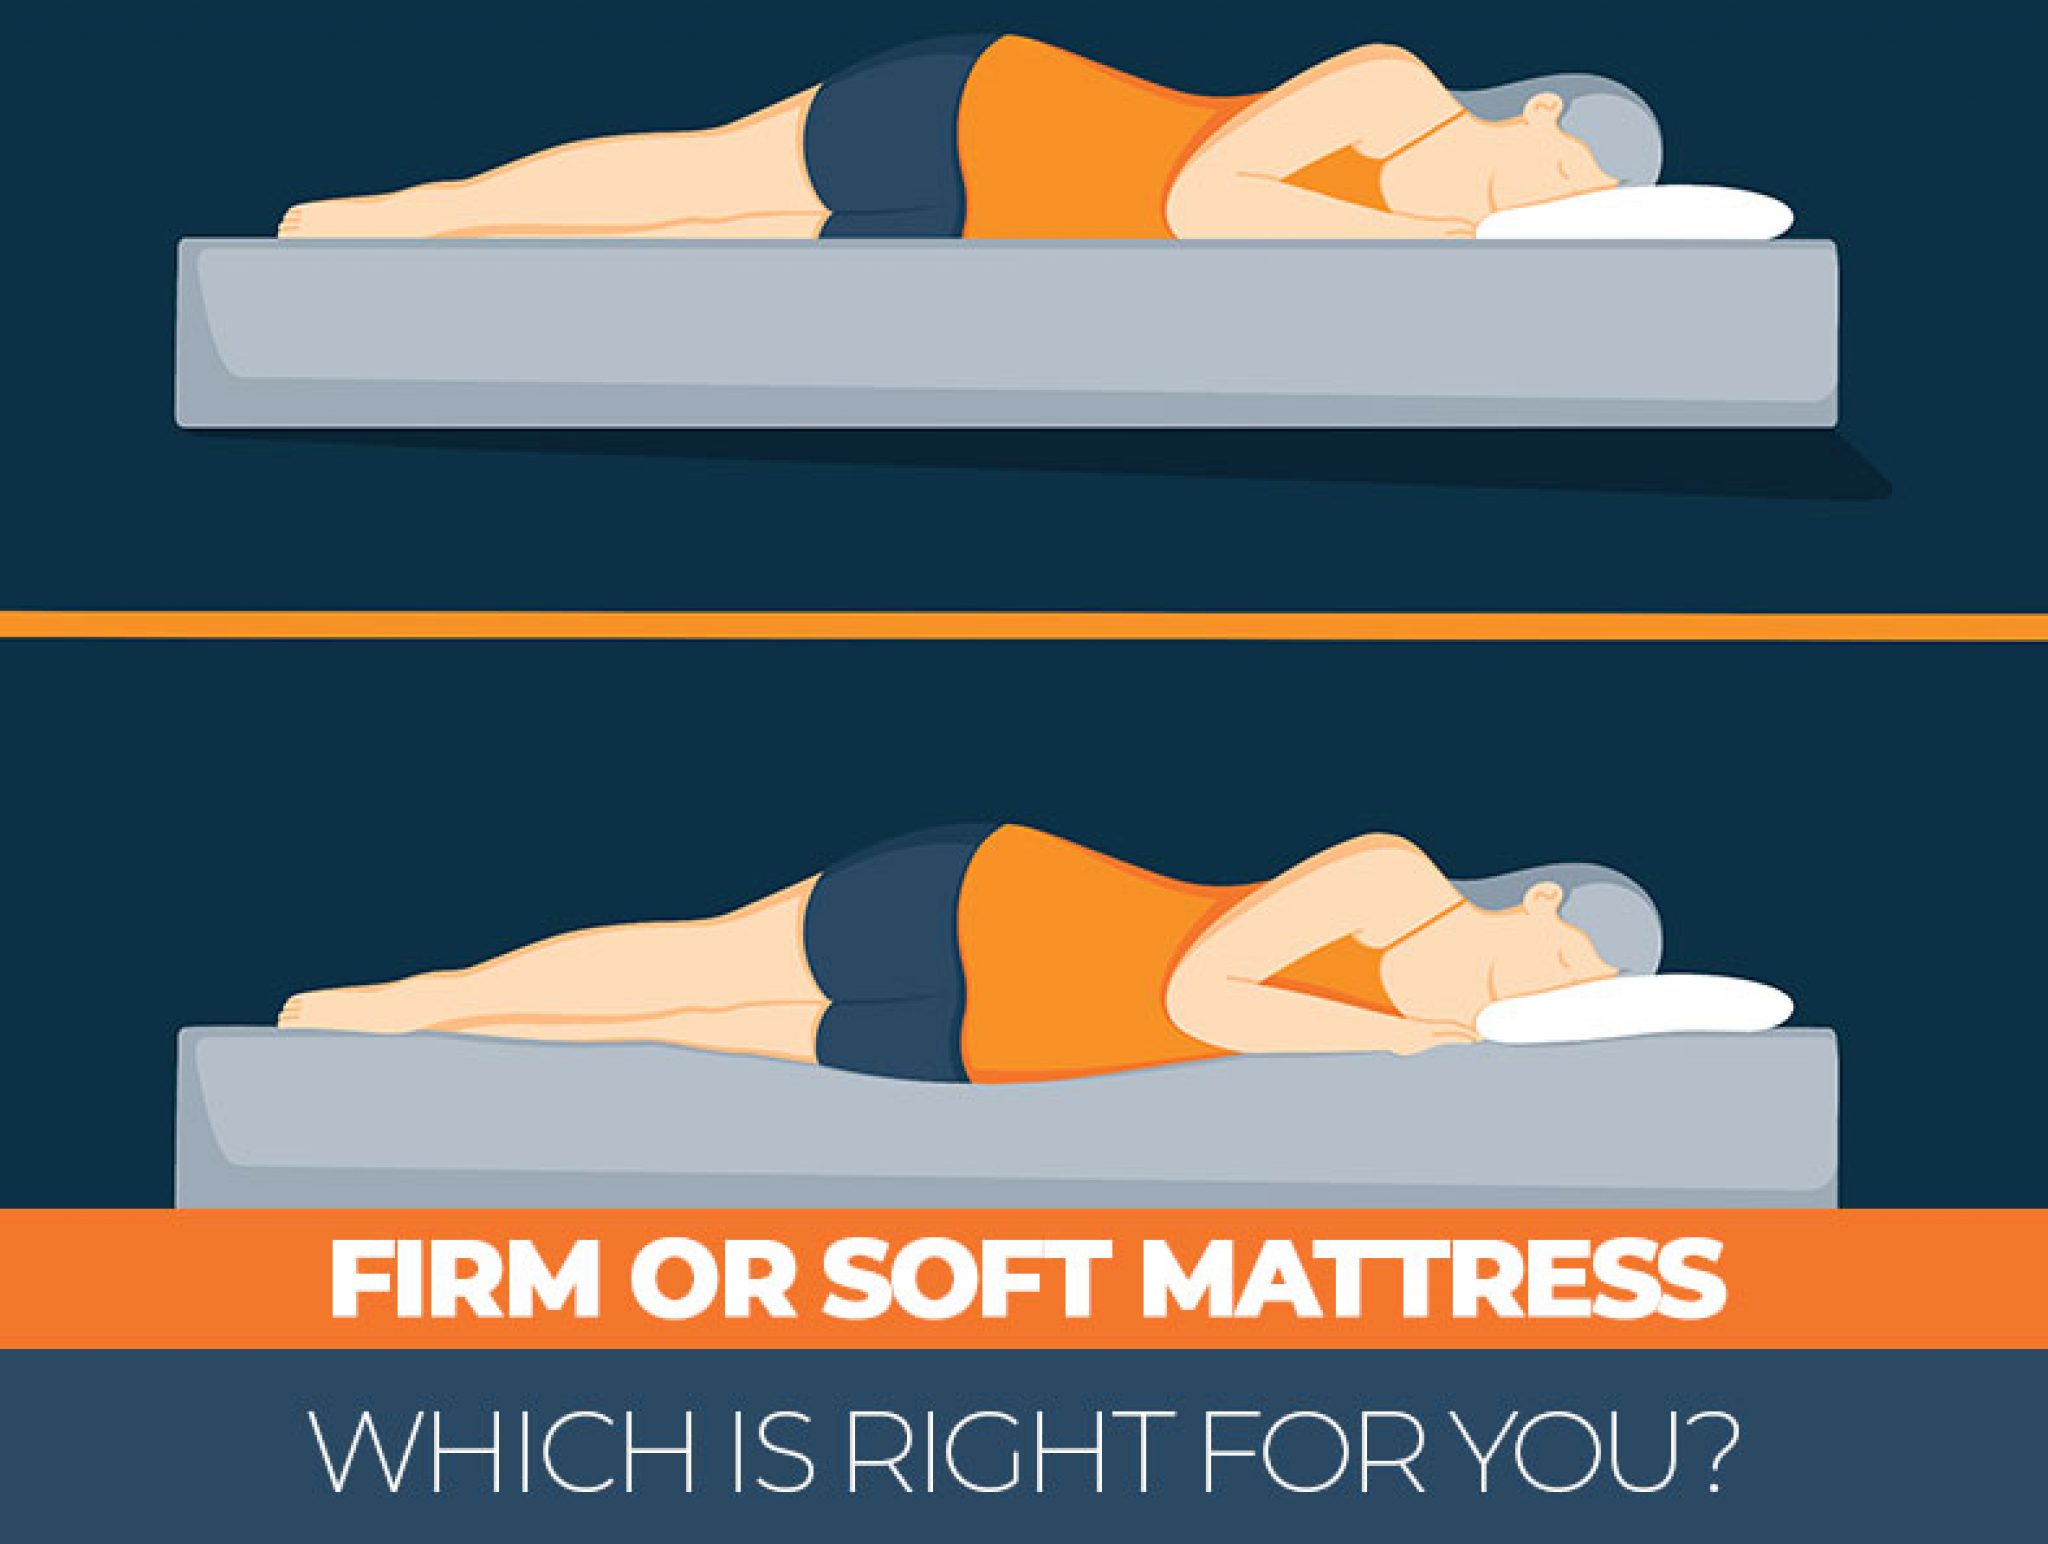 soft firm or normal mattress